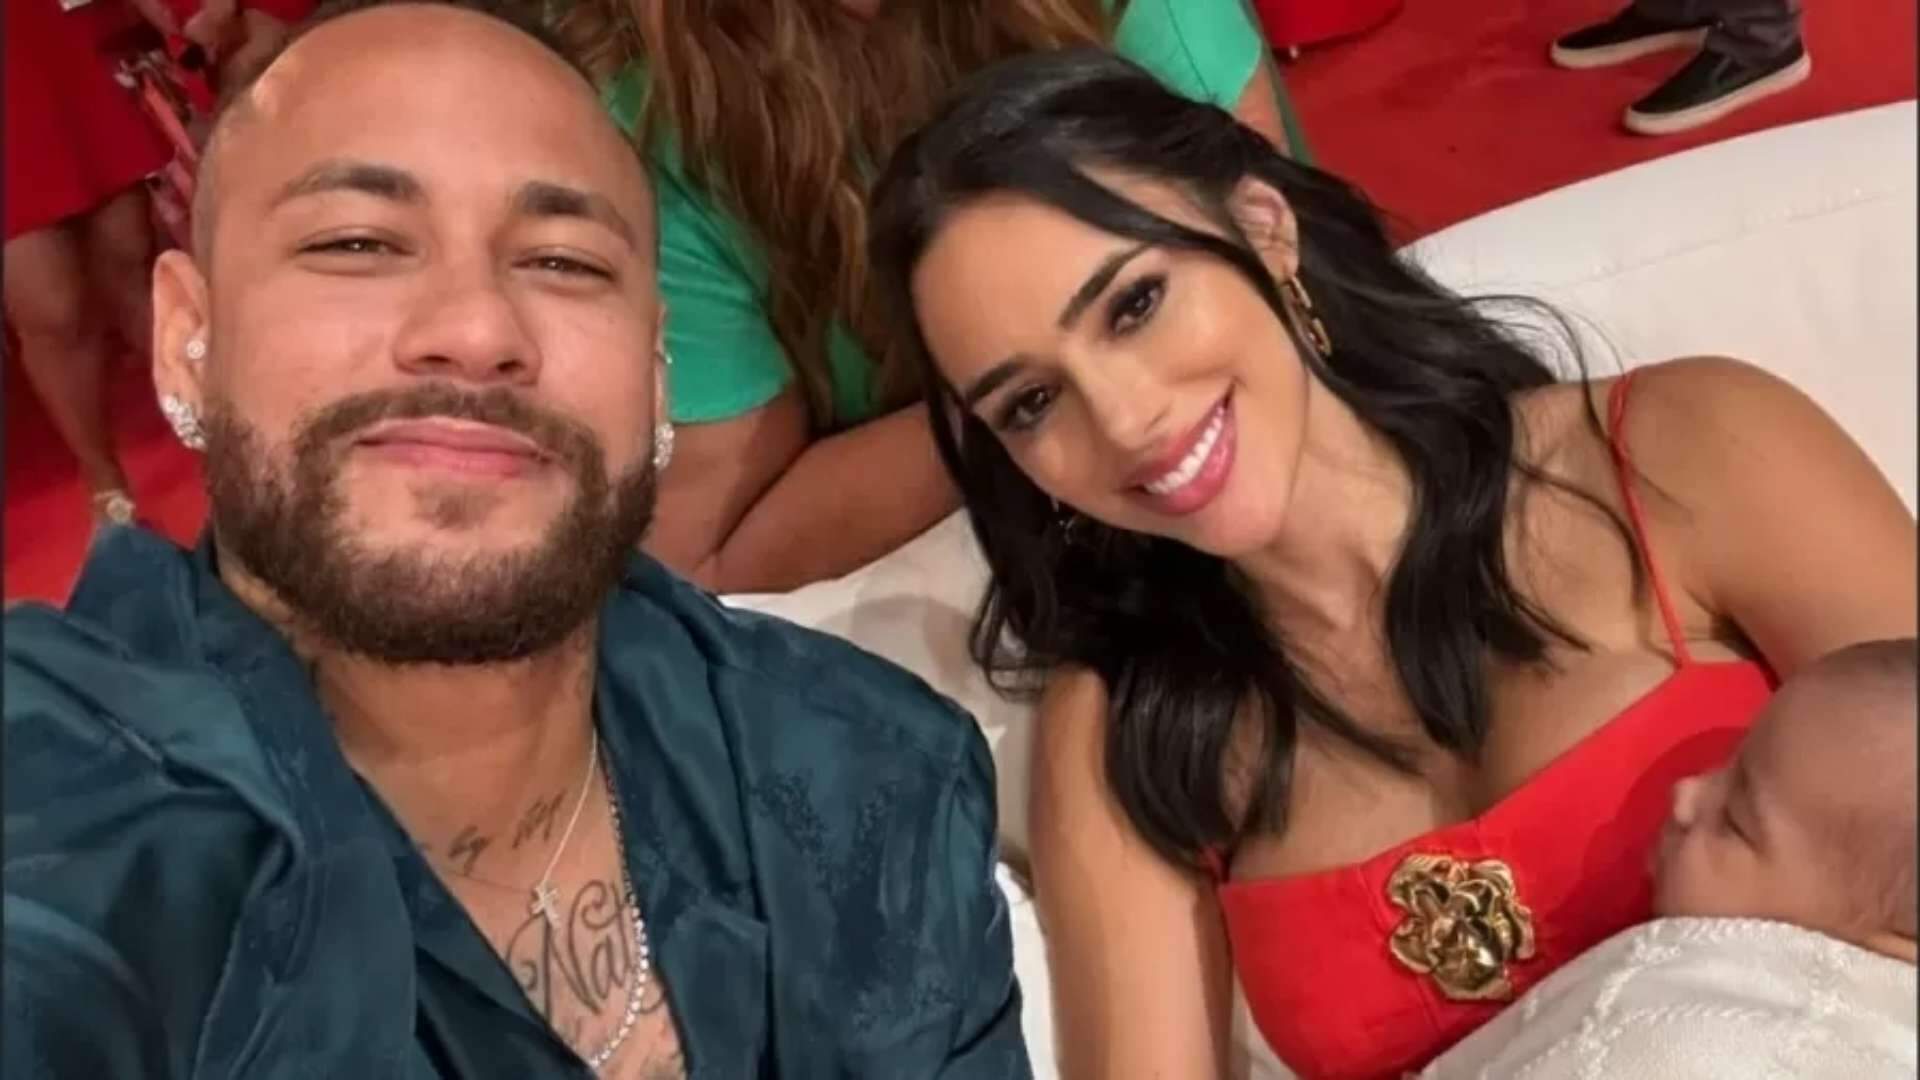 Voltaram oficialmente? Neymar posta vídeo inusitado com Bruna Biancardi e fãs reparam em detalhe chocante - Metropolitana FM